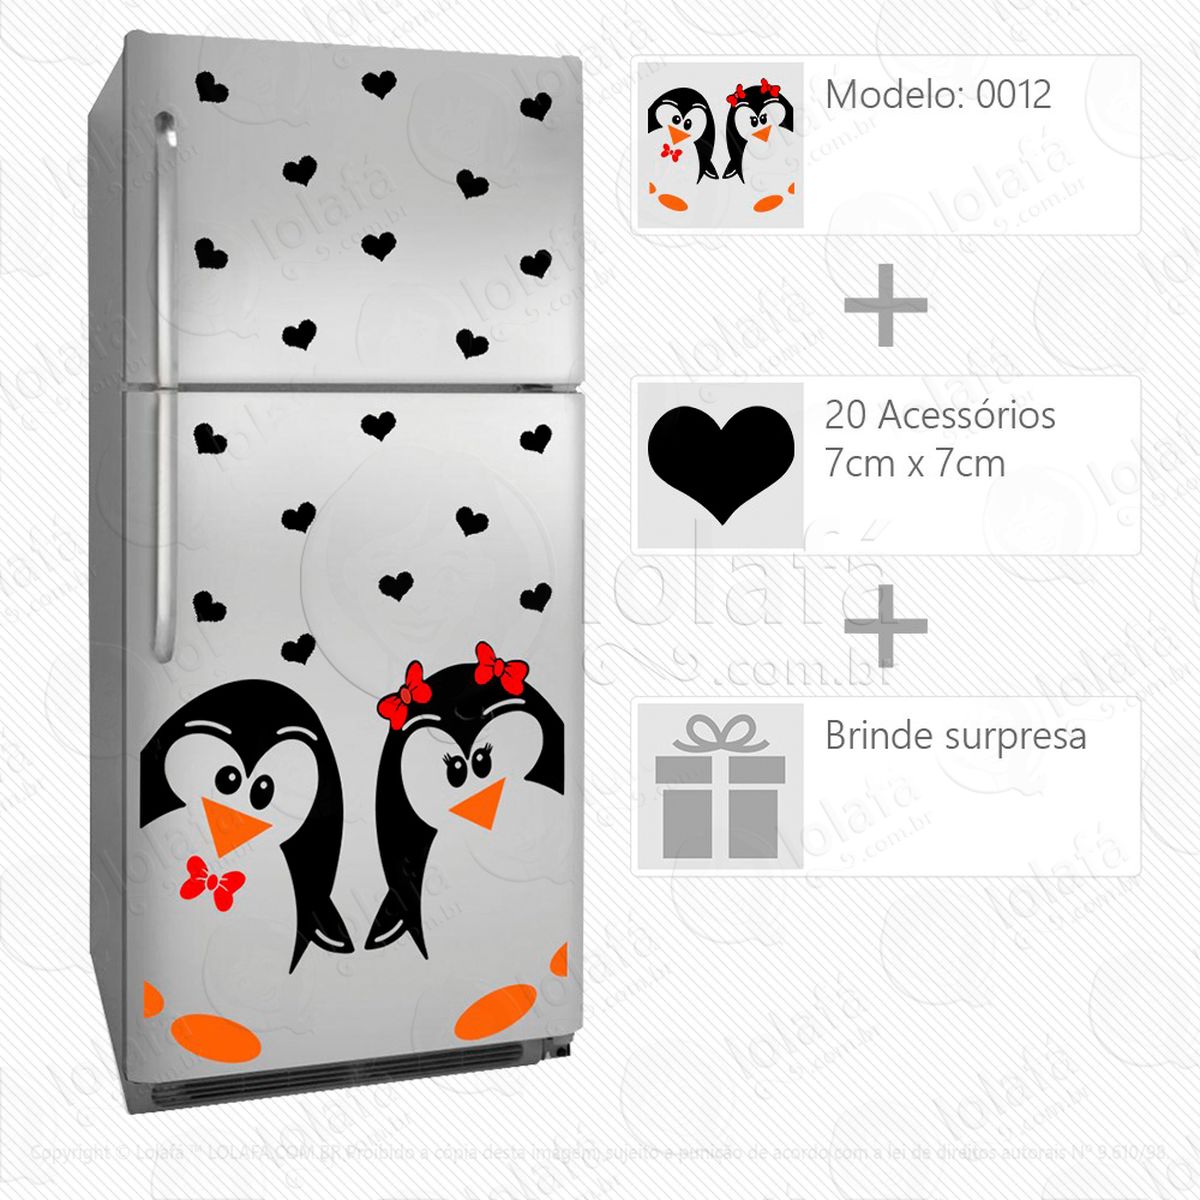 pinguins adesivo para geladeira e frigobar - mod:12